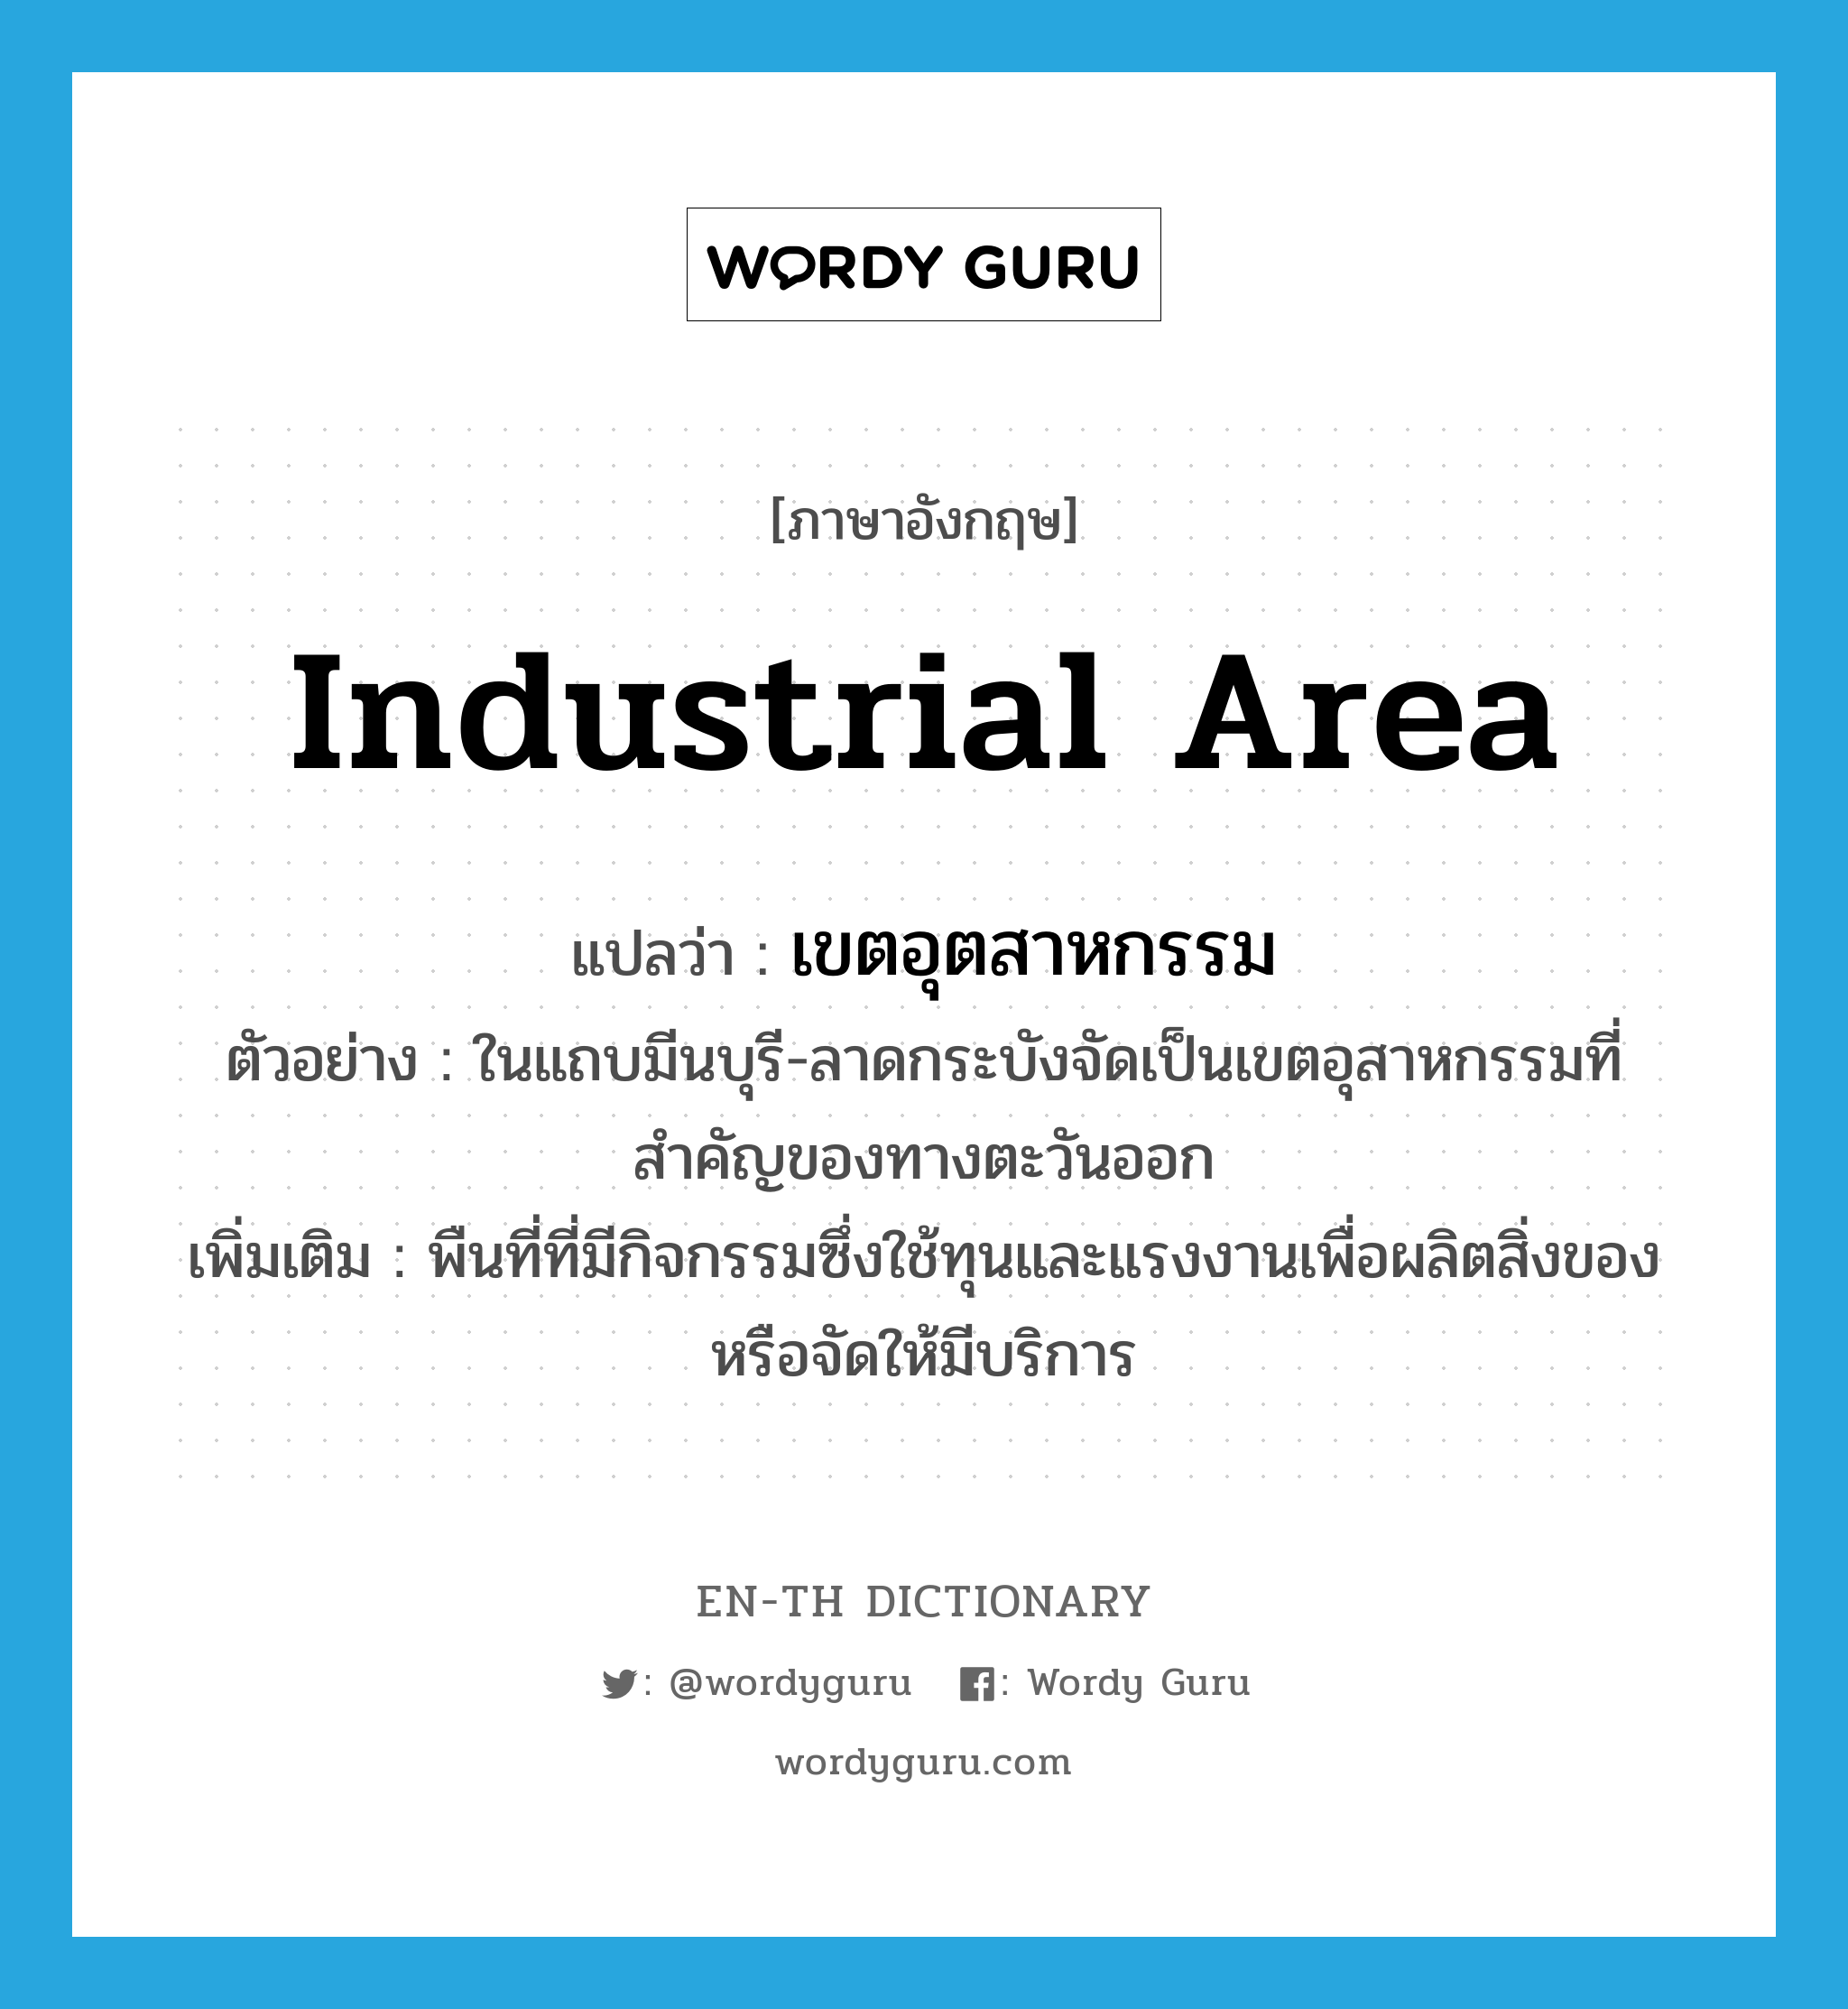 industrial area แปลว่า?, คำศัพท์ภาษาอังกฤษ industrial area แปลว่า เขตอุตสาหกรรม ประเภท N ตัวอย่าง ในแถบมีนบุรี-ลาดกระบังจัดเป็นเขตอุสาหกรรมที่สำคัญของทางตะวันออก เพิ่มเติม พืนที่ที่มีกิจกรรมซึ่งใช้ทุนและแรงงานเพื่อผลิตสิ่งของหรือจัดให้มีบริการ หมวด N